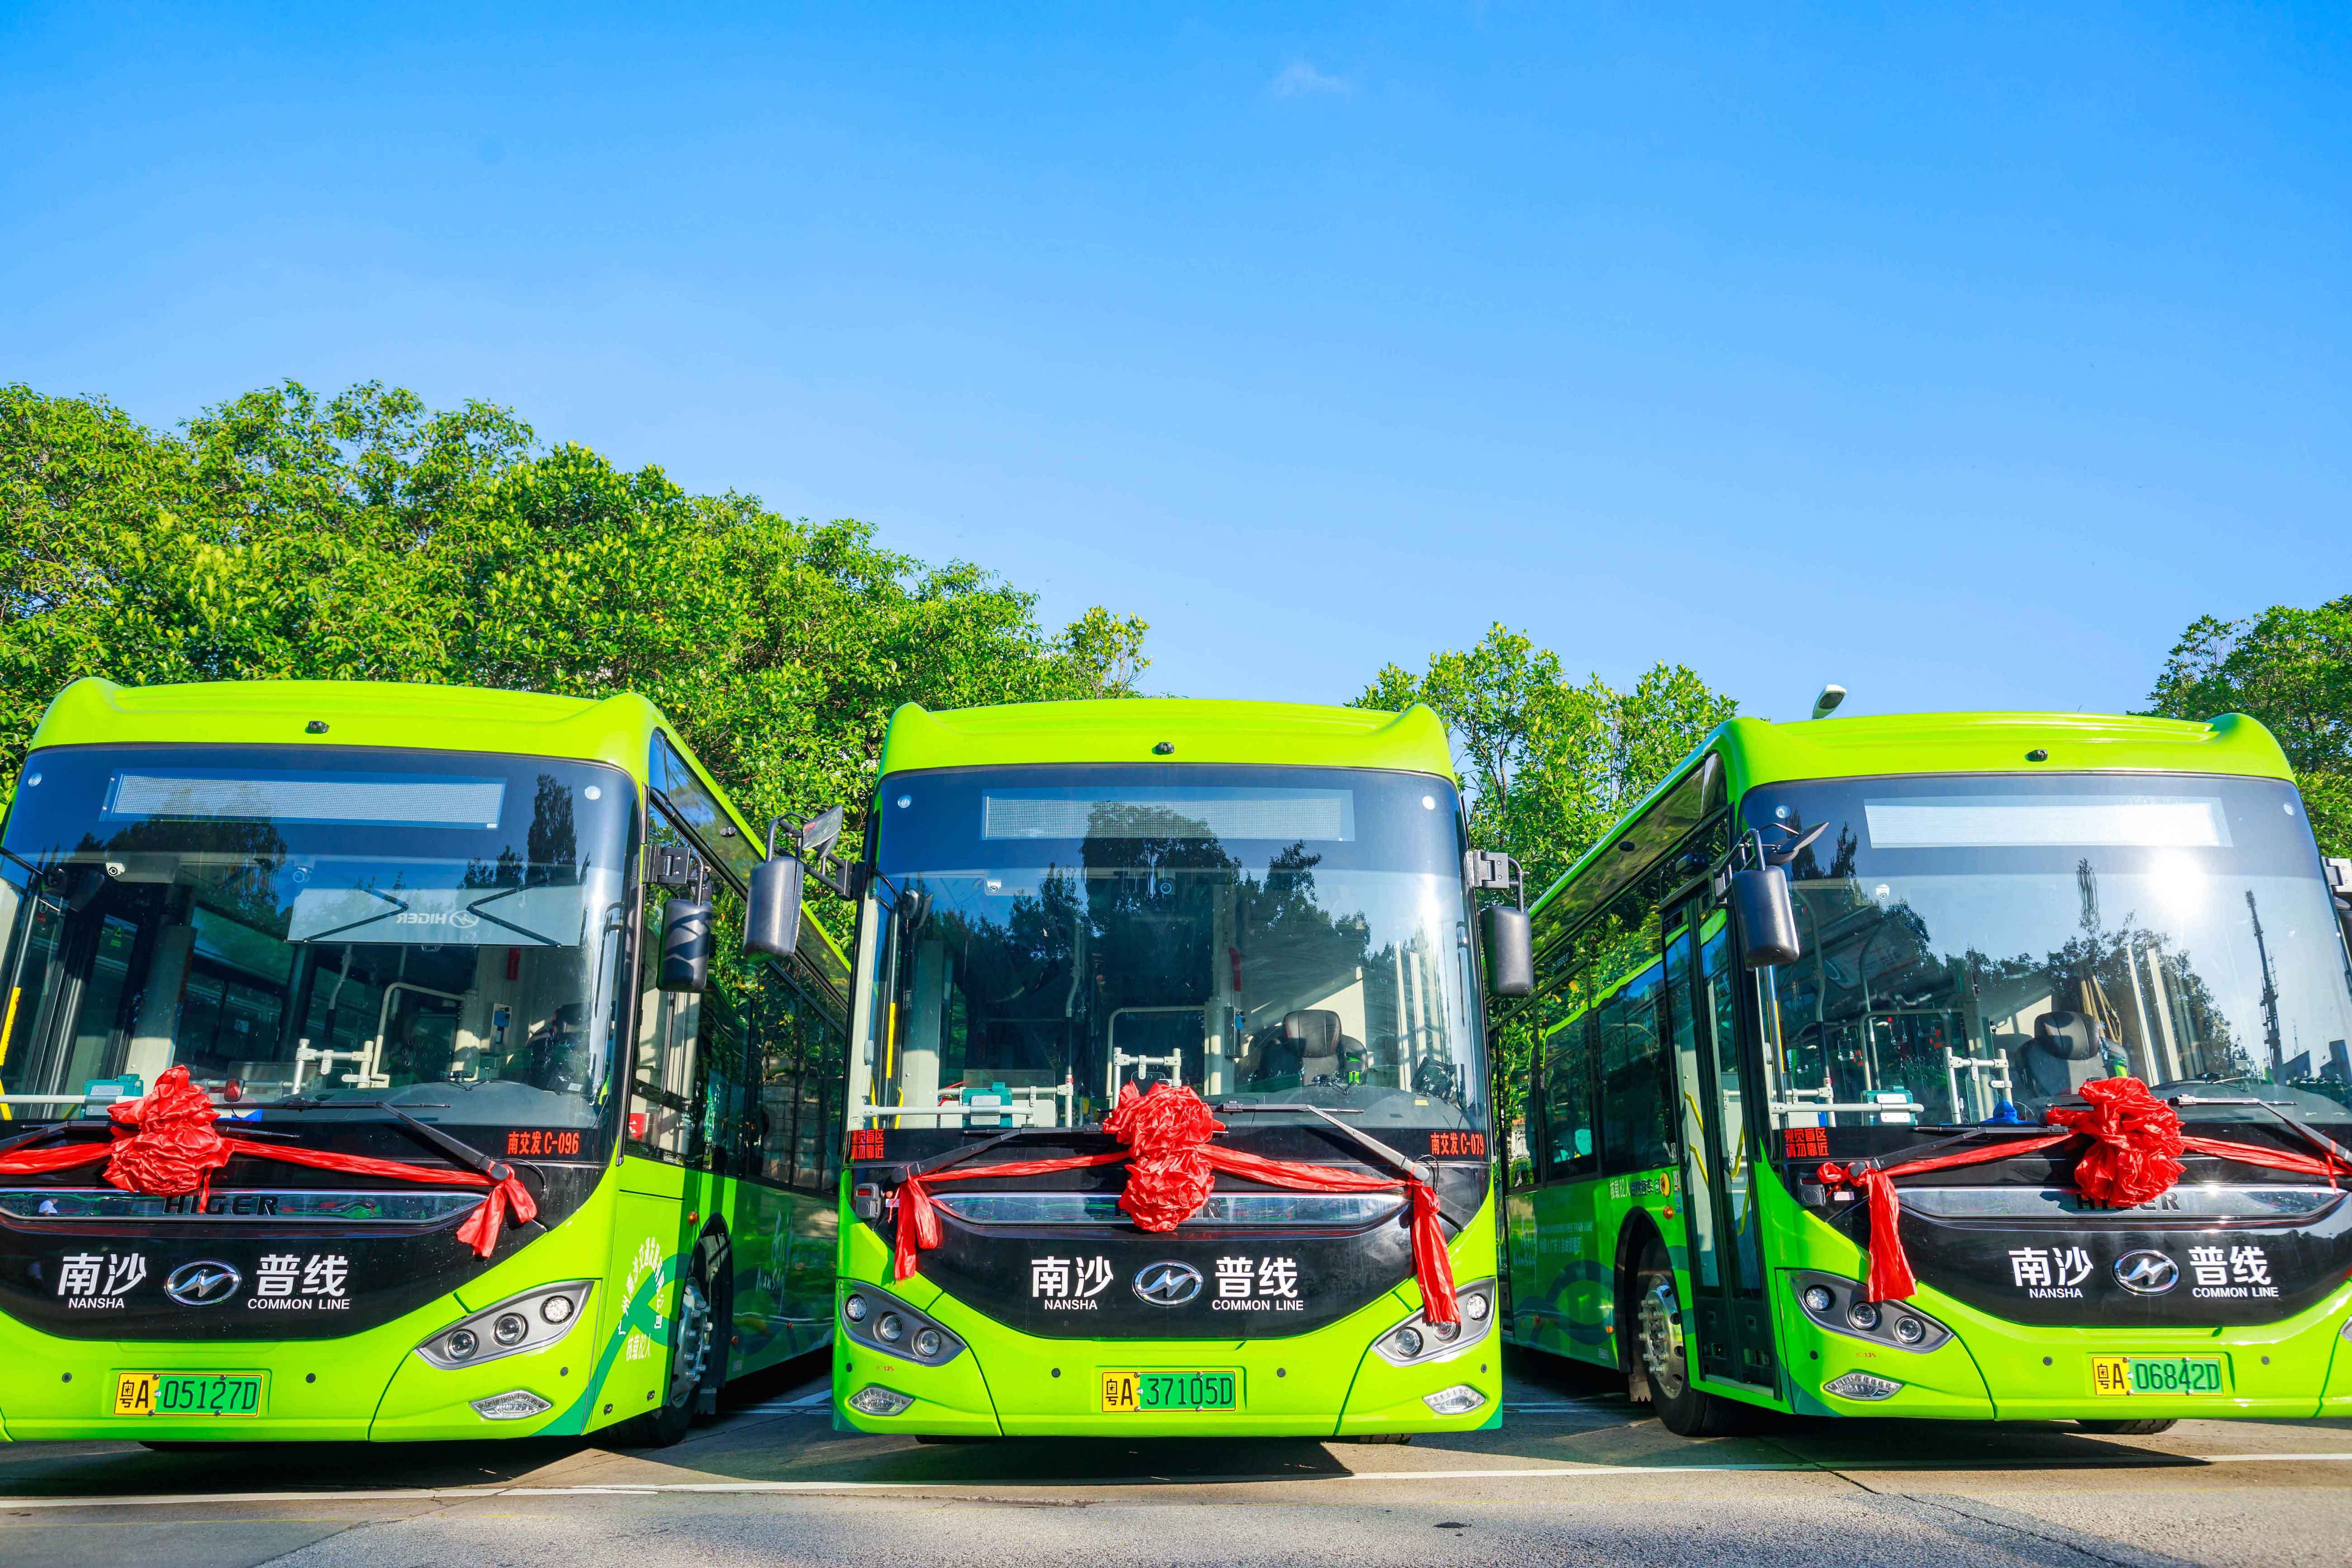 5米纯电动公交车于9月投入运营,目前已运营2月有余,以时尚大气,绿色